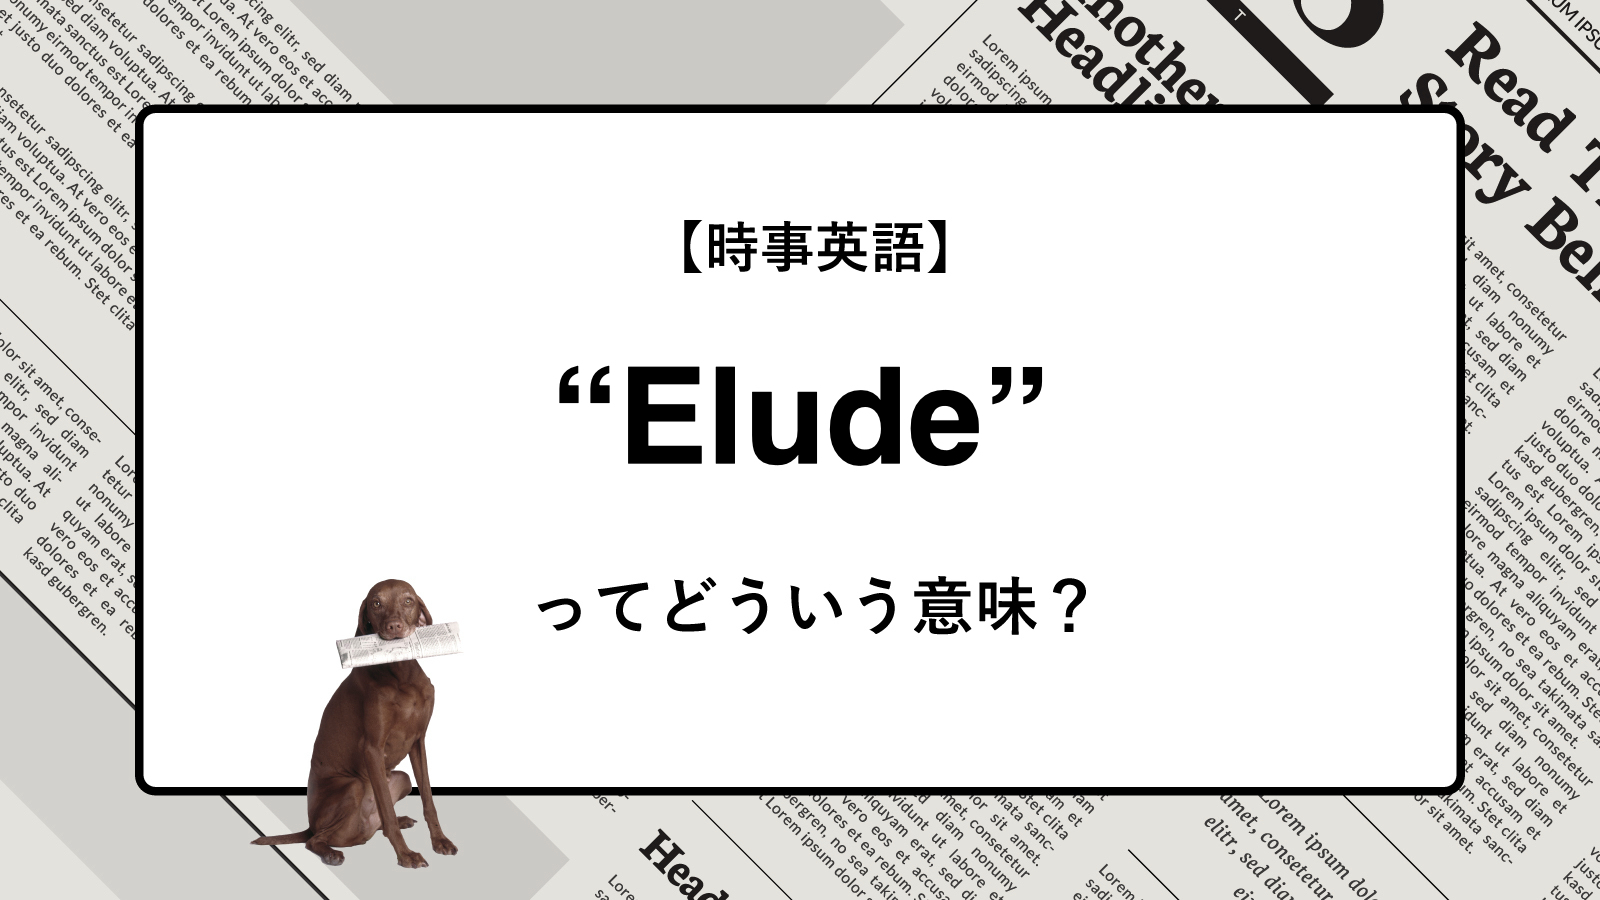 【時事英語】“Elude” ってどういう意味？ | ニュースの「キーワード」で語彙力を身につける